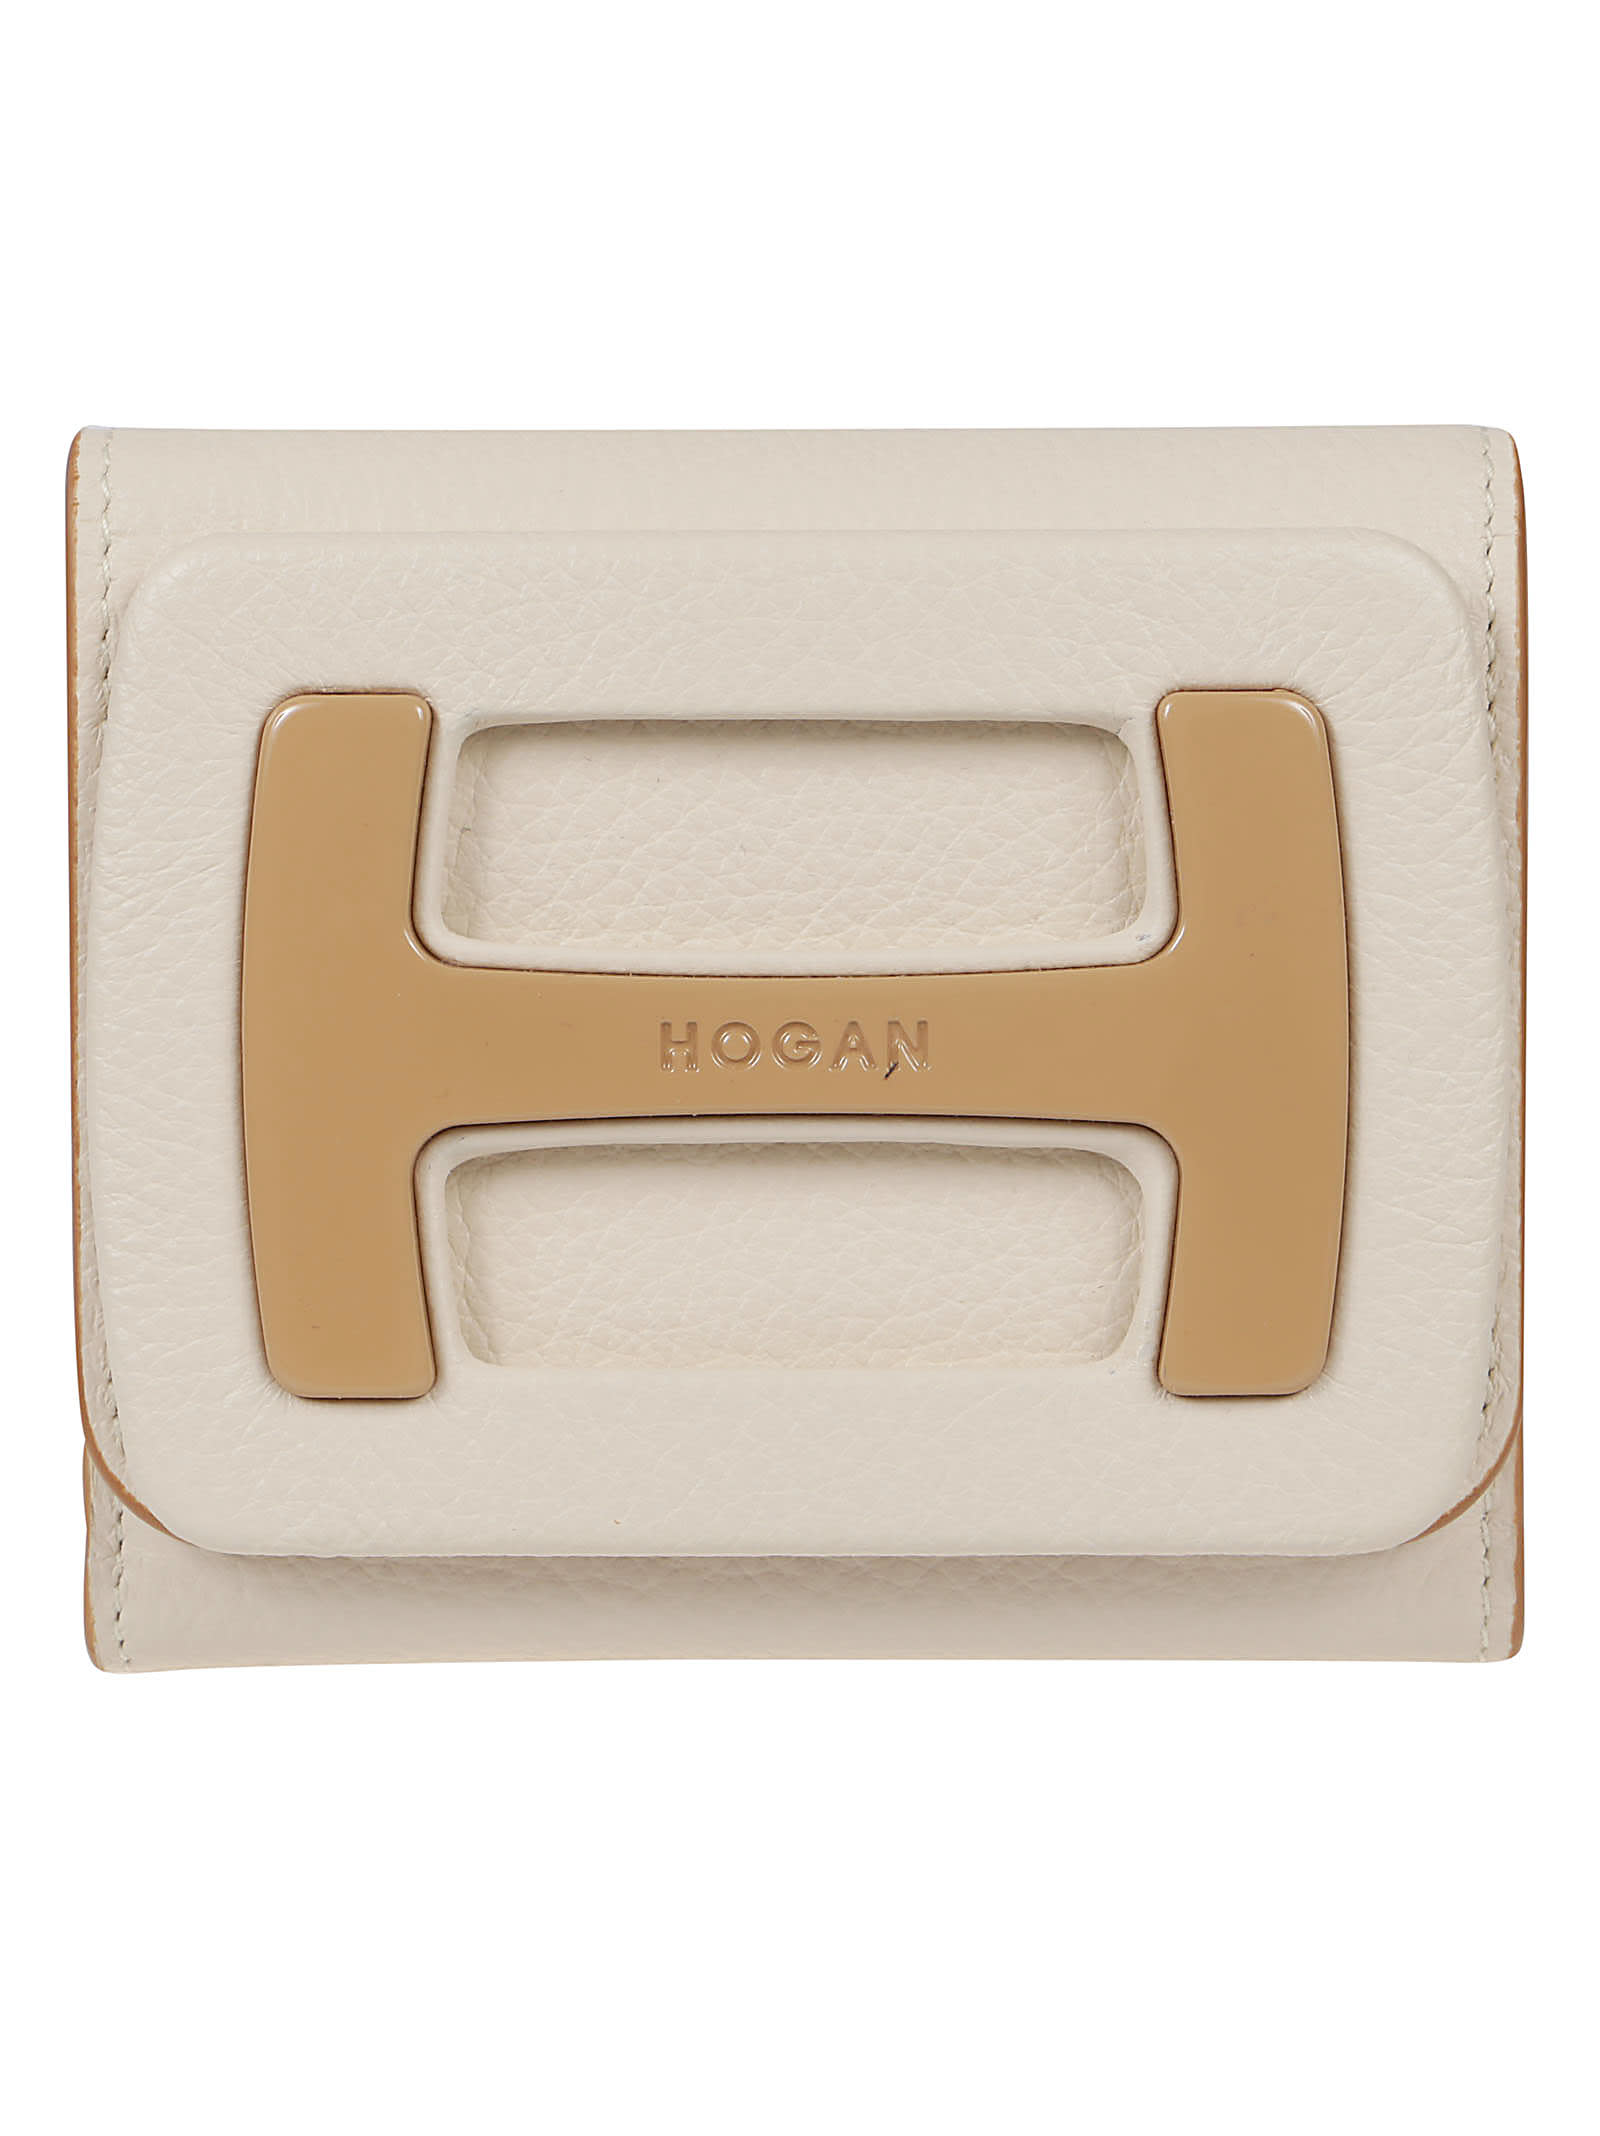 Hogan Compact Wallet